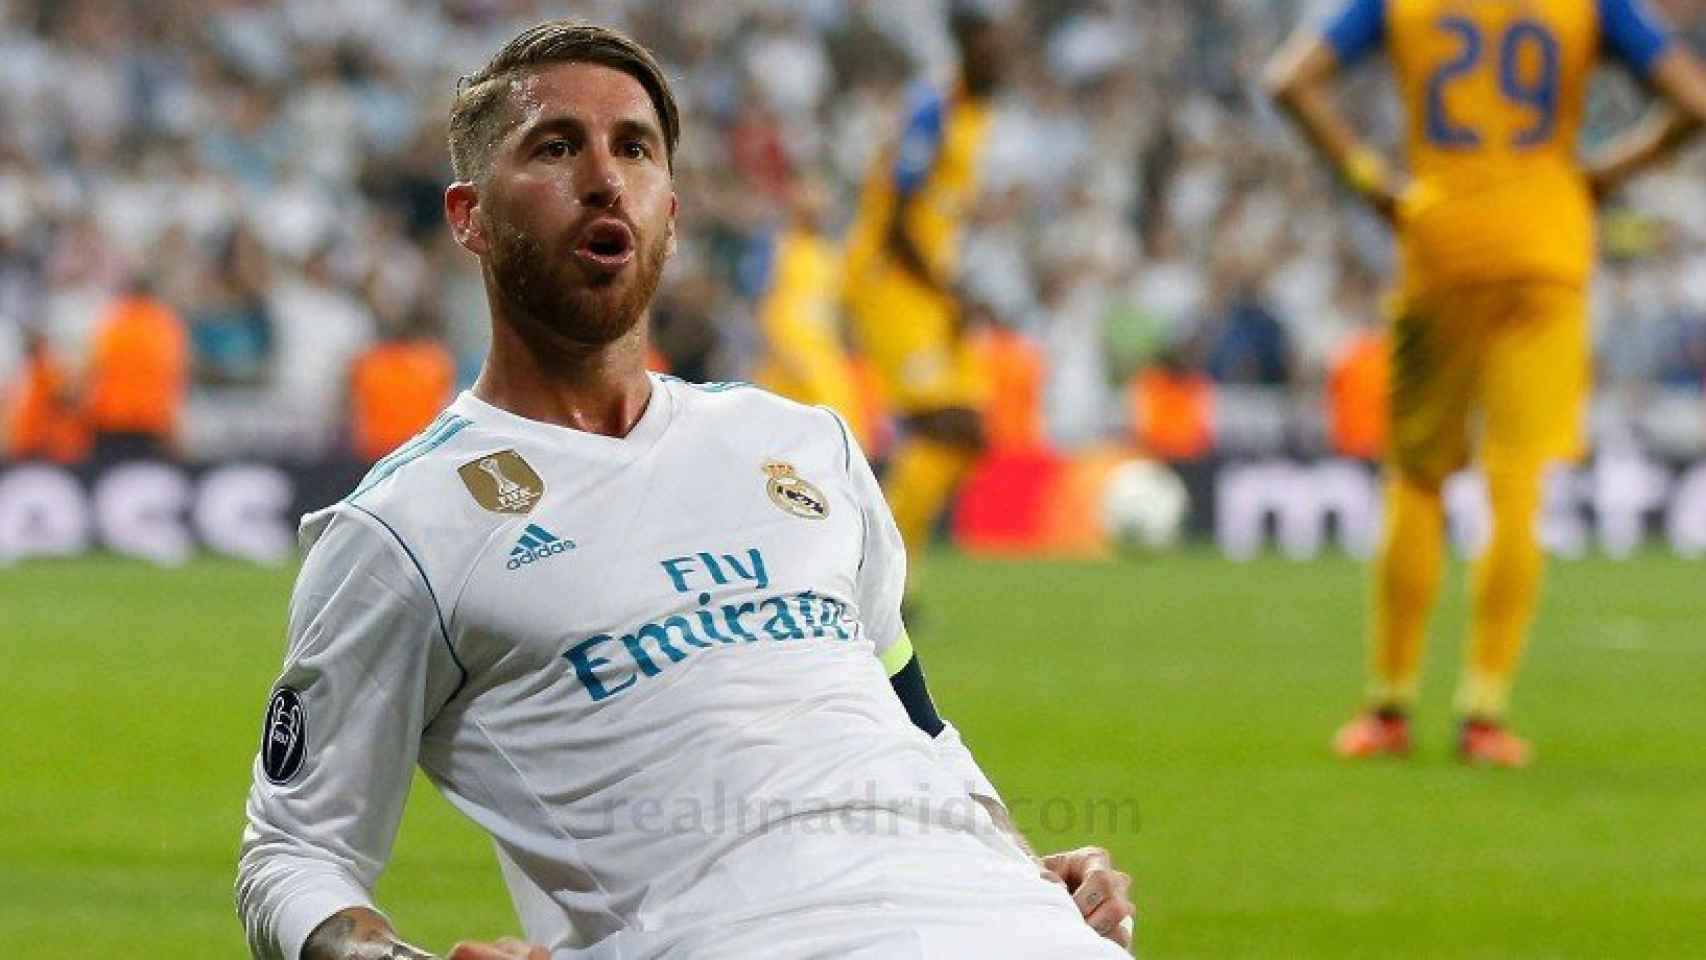 Ramos celebra su gol